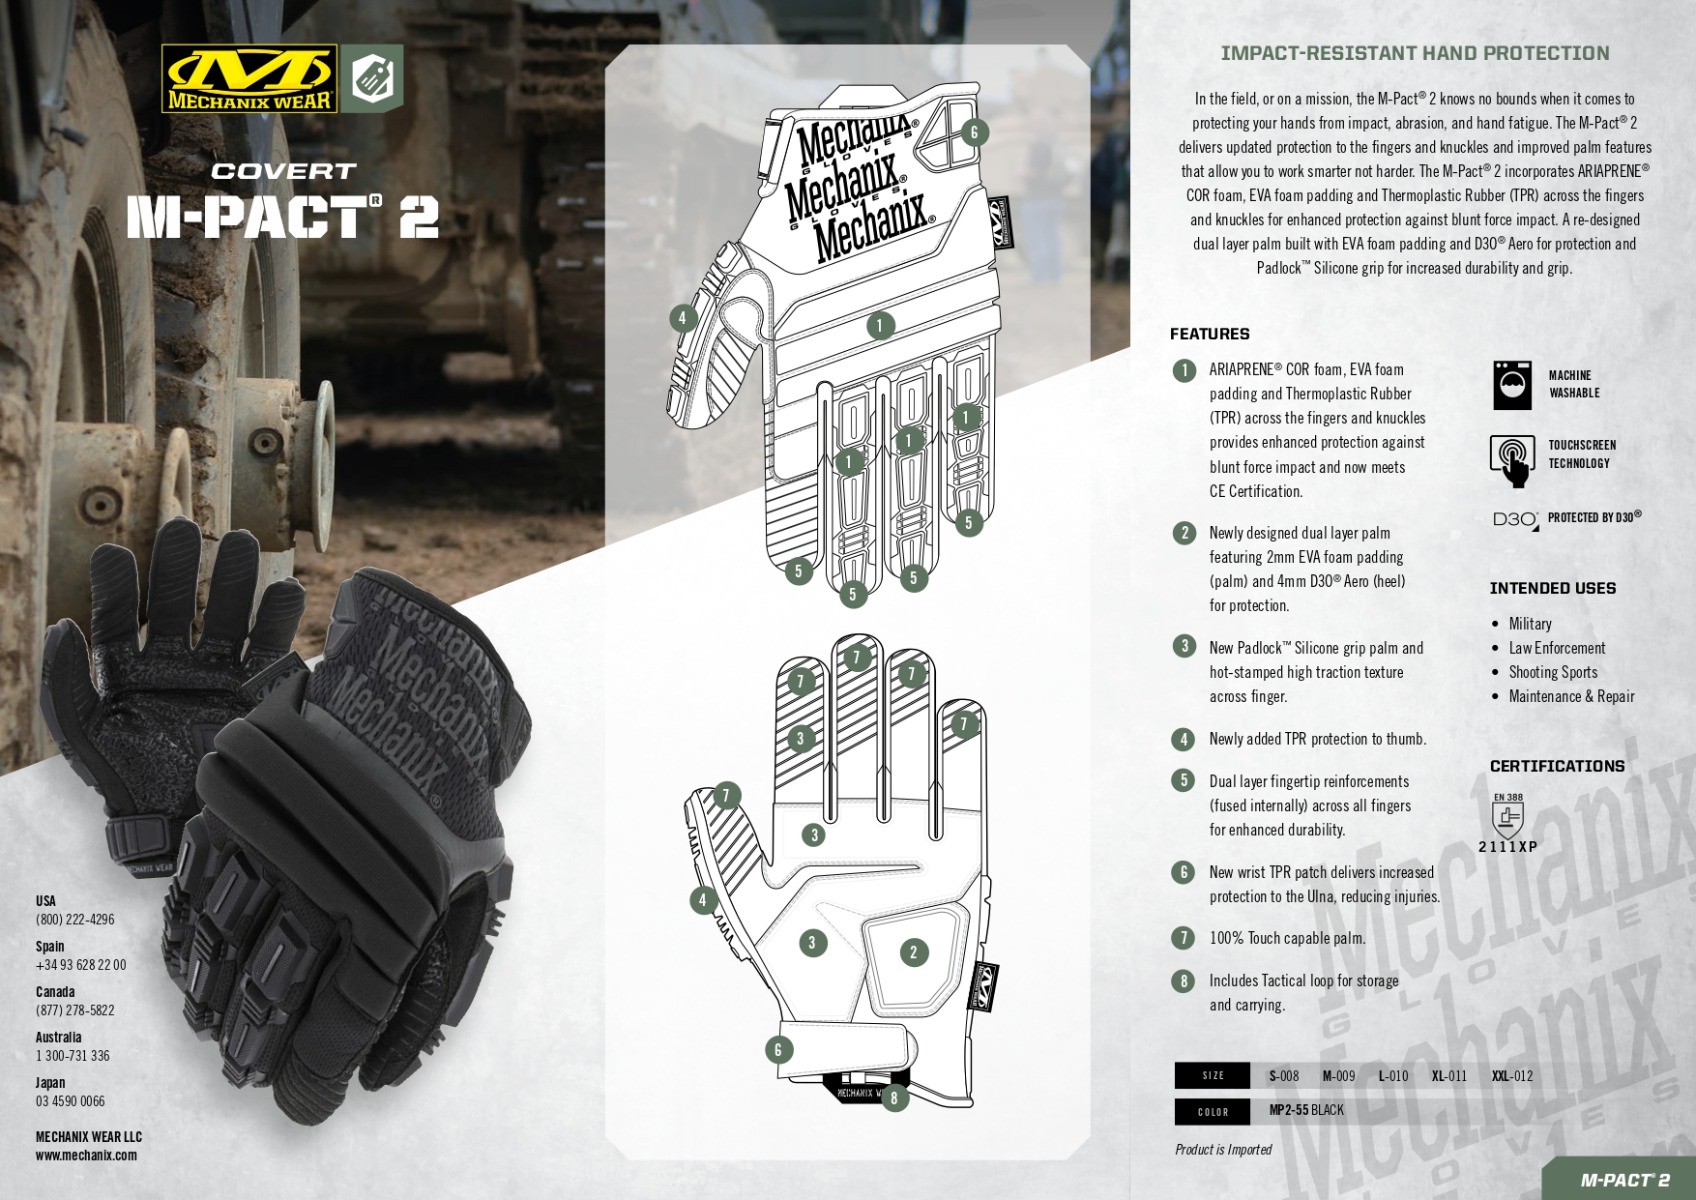 Zaščitite svoje roke z vrhunskimi Mechanix Wear taktičnimi rokavicami M-Pact® Covert 2 Black. Certificirane EN388 2111XP, odporne proti udarcem, zagotavljajo udobje, vzdržljivost in varnost. Idealne za profesionalno uporabo, športne aktivnosti in vojaške/policijske enote. Udobne, z odličnim oprijemom in svobodo gibanja. Povečajte učinkovitost vašega dela ali športnih dejavnosti.